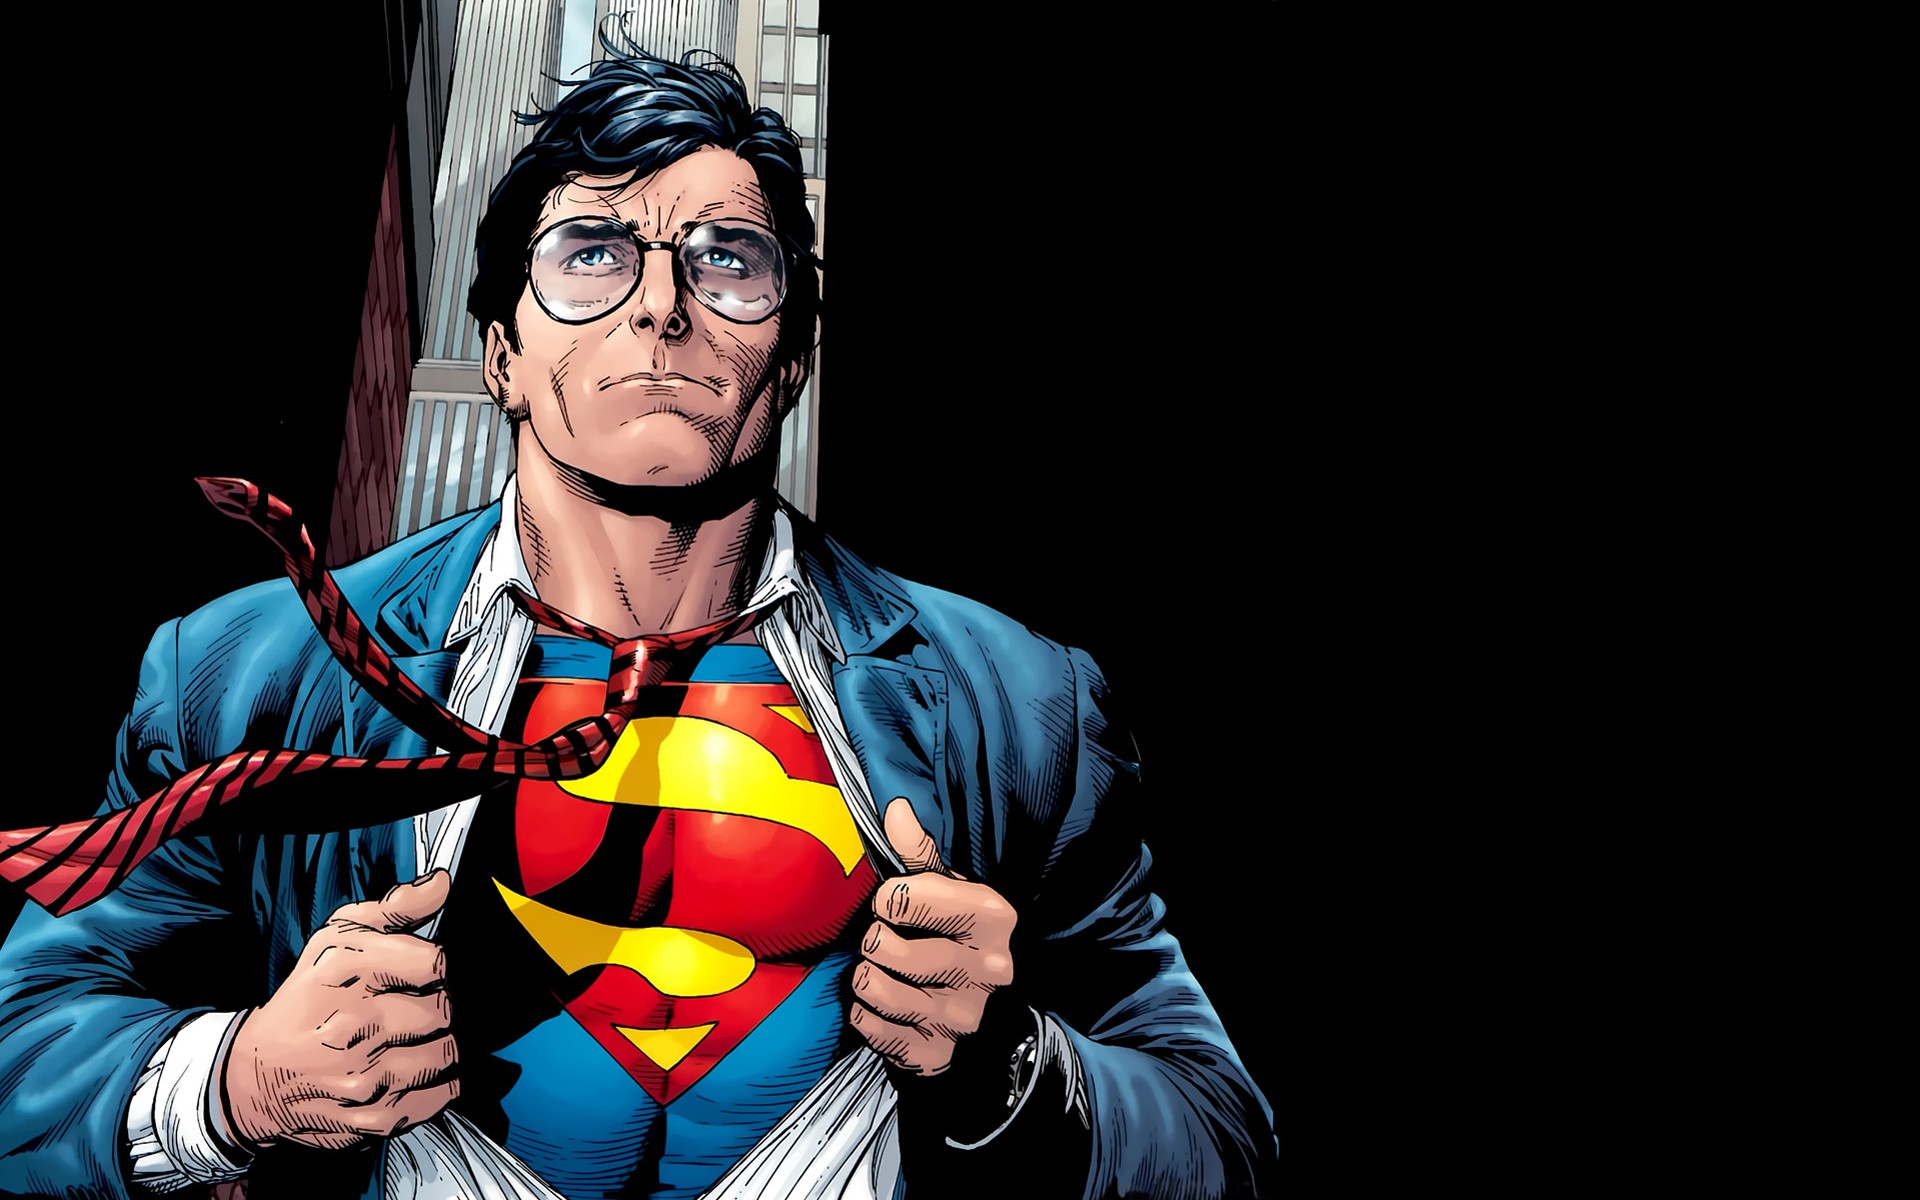 Скачать обои бесплатно Комиксы, Супермен картинка на рабочий стол ПК